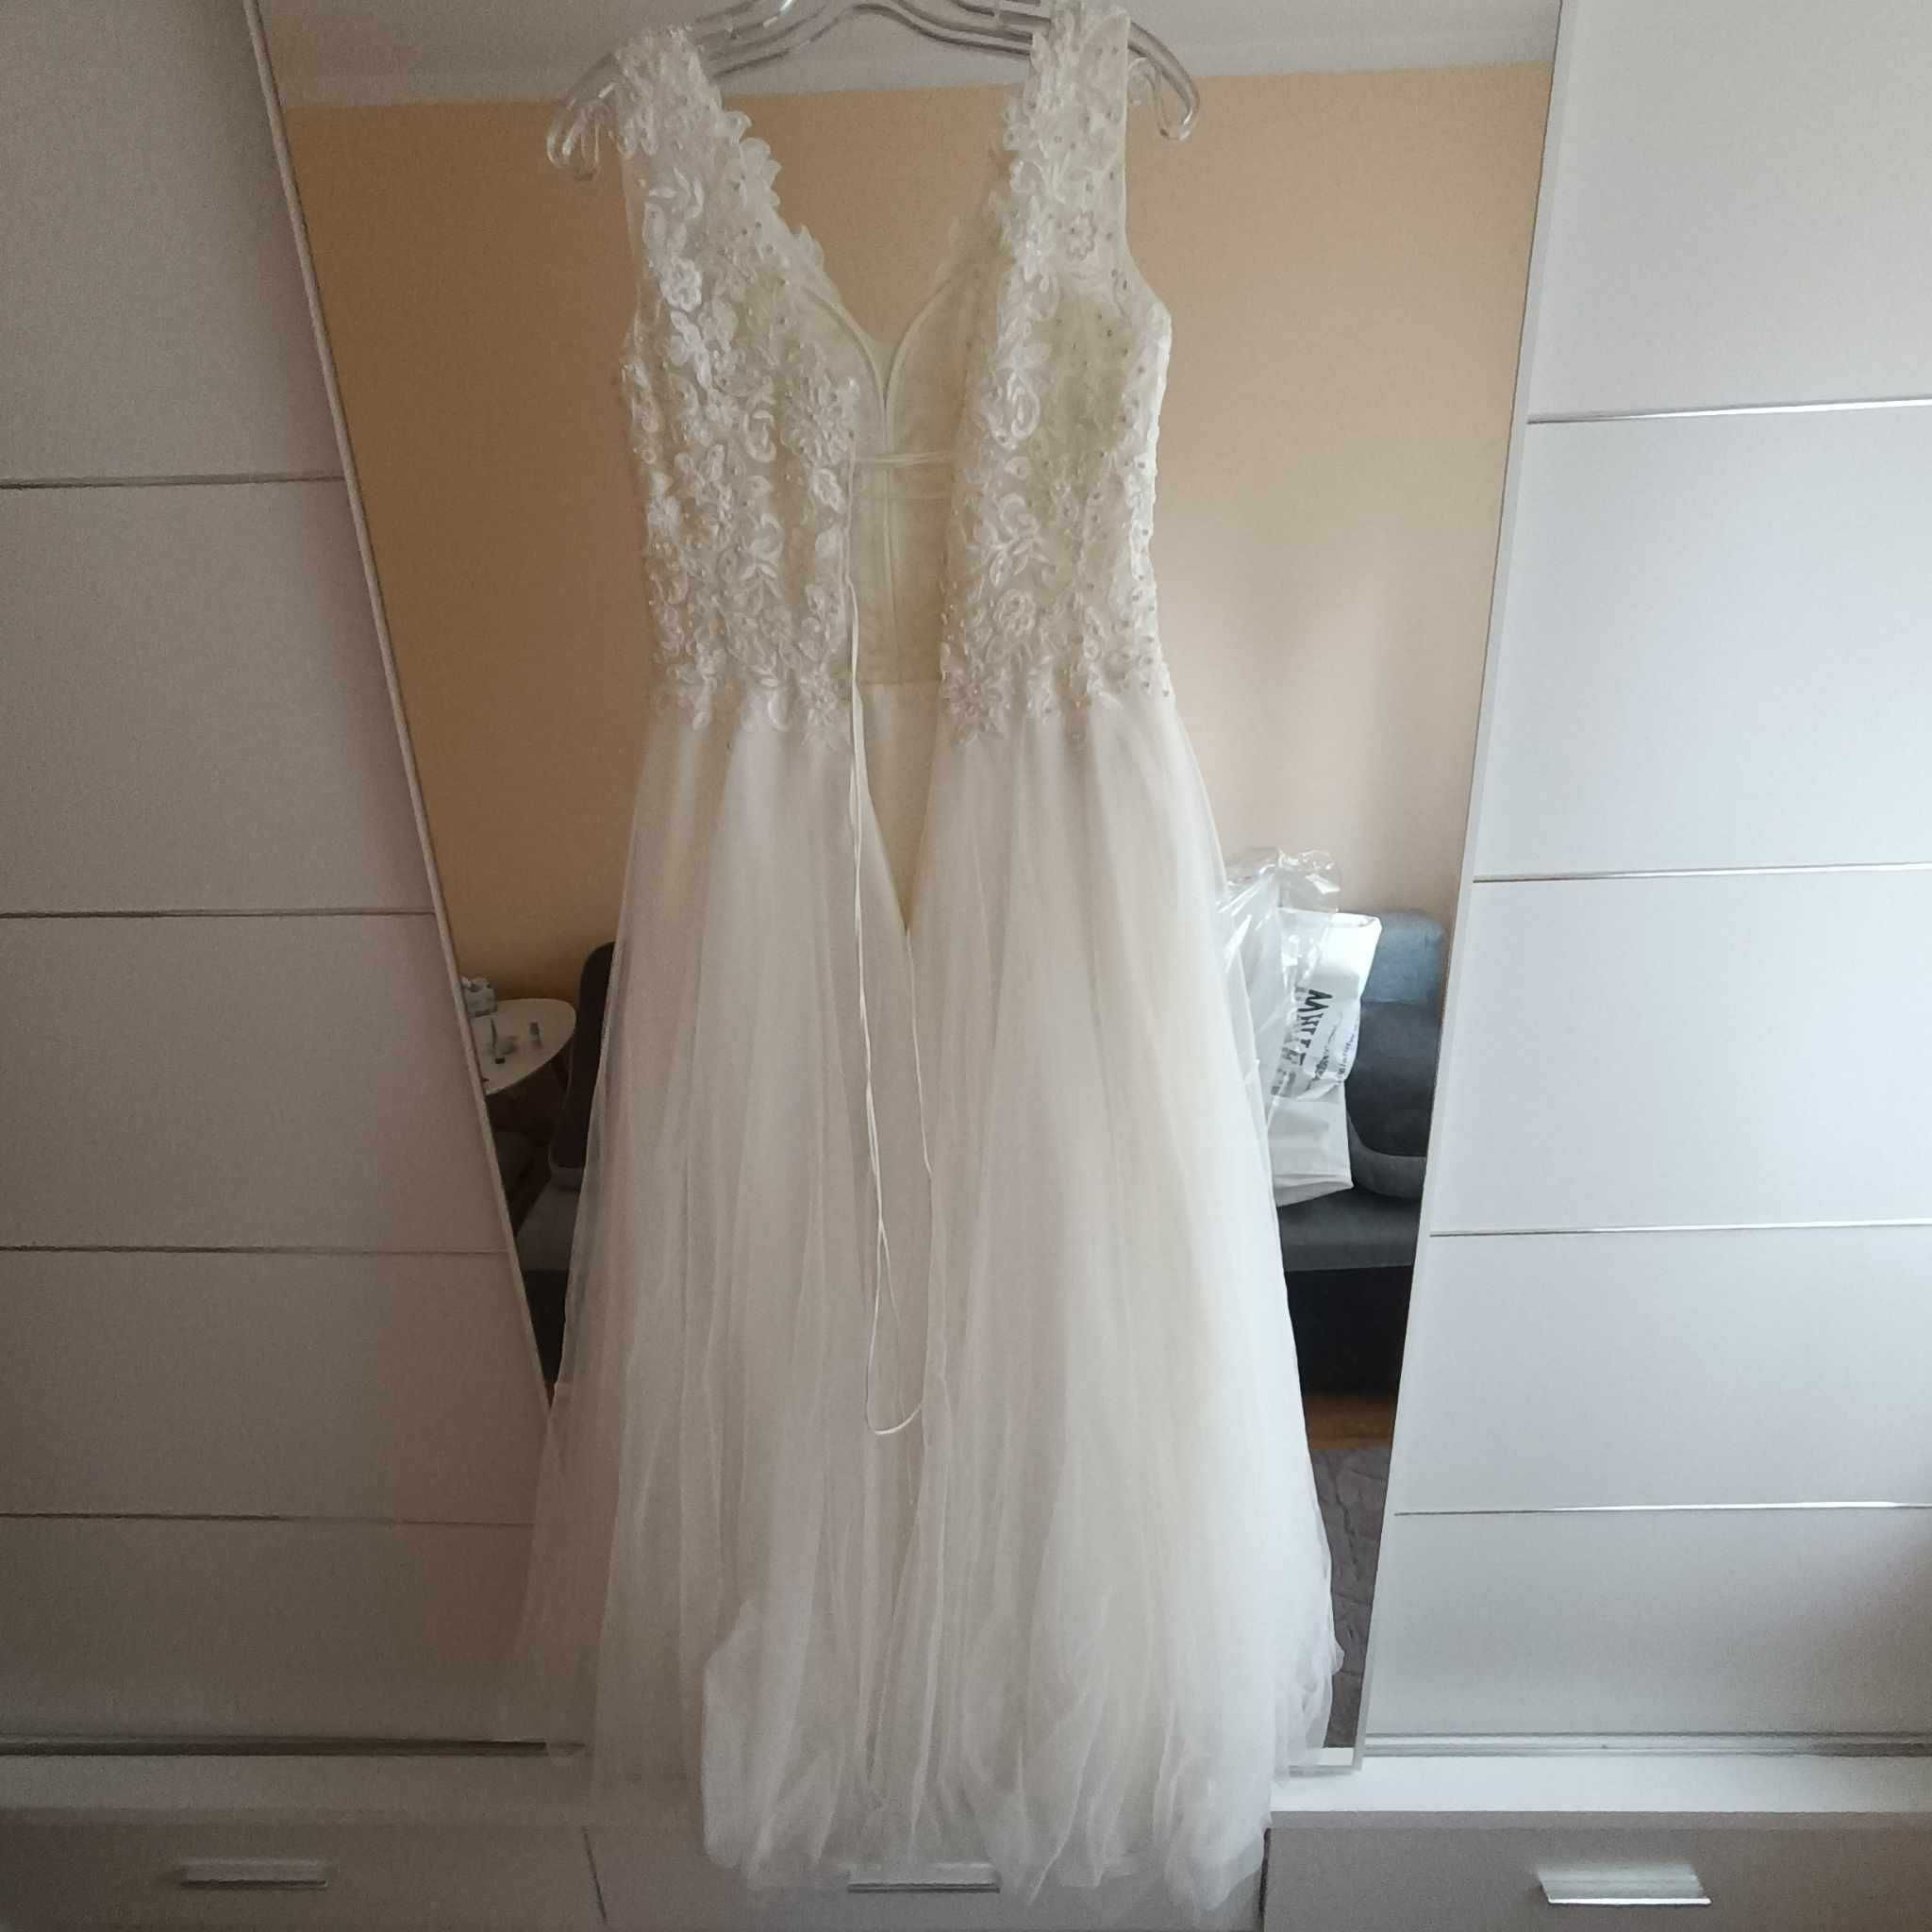 suknia ślubna na wzrost 165 rozmiar 38+welon długi gratis